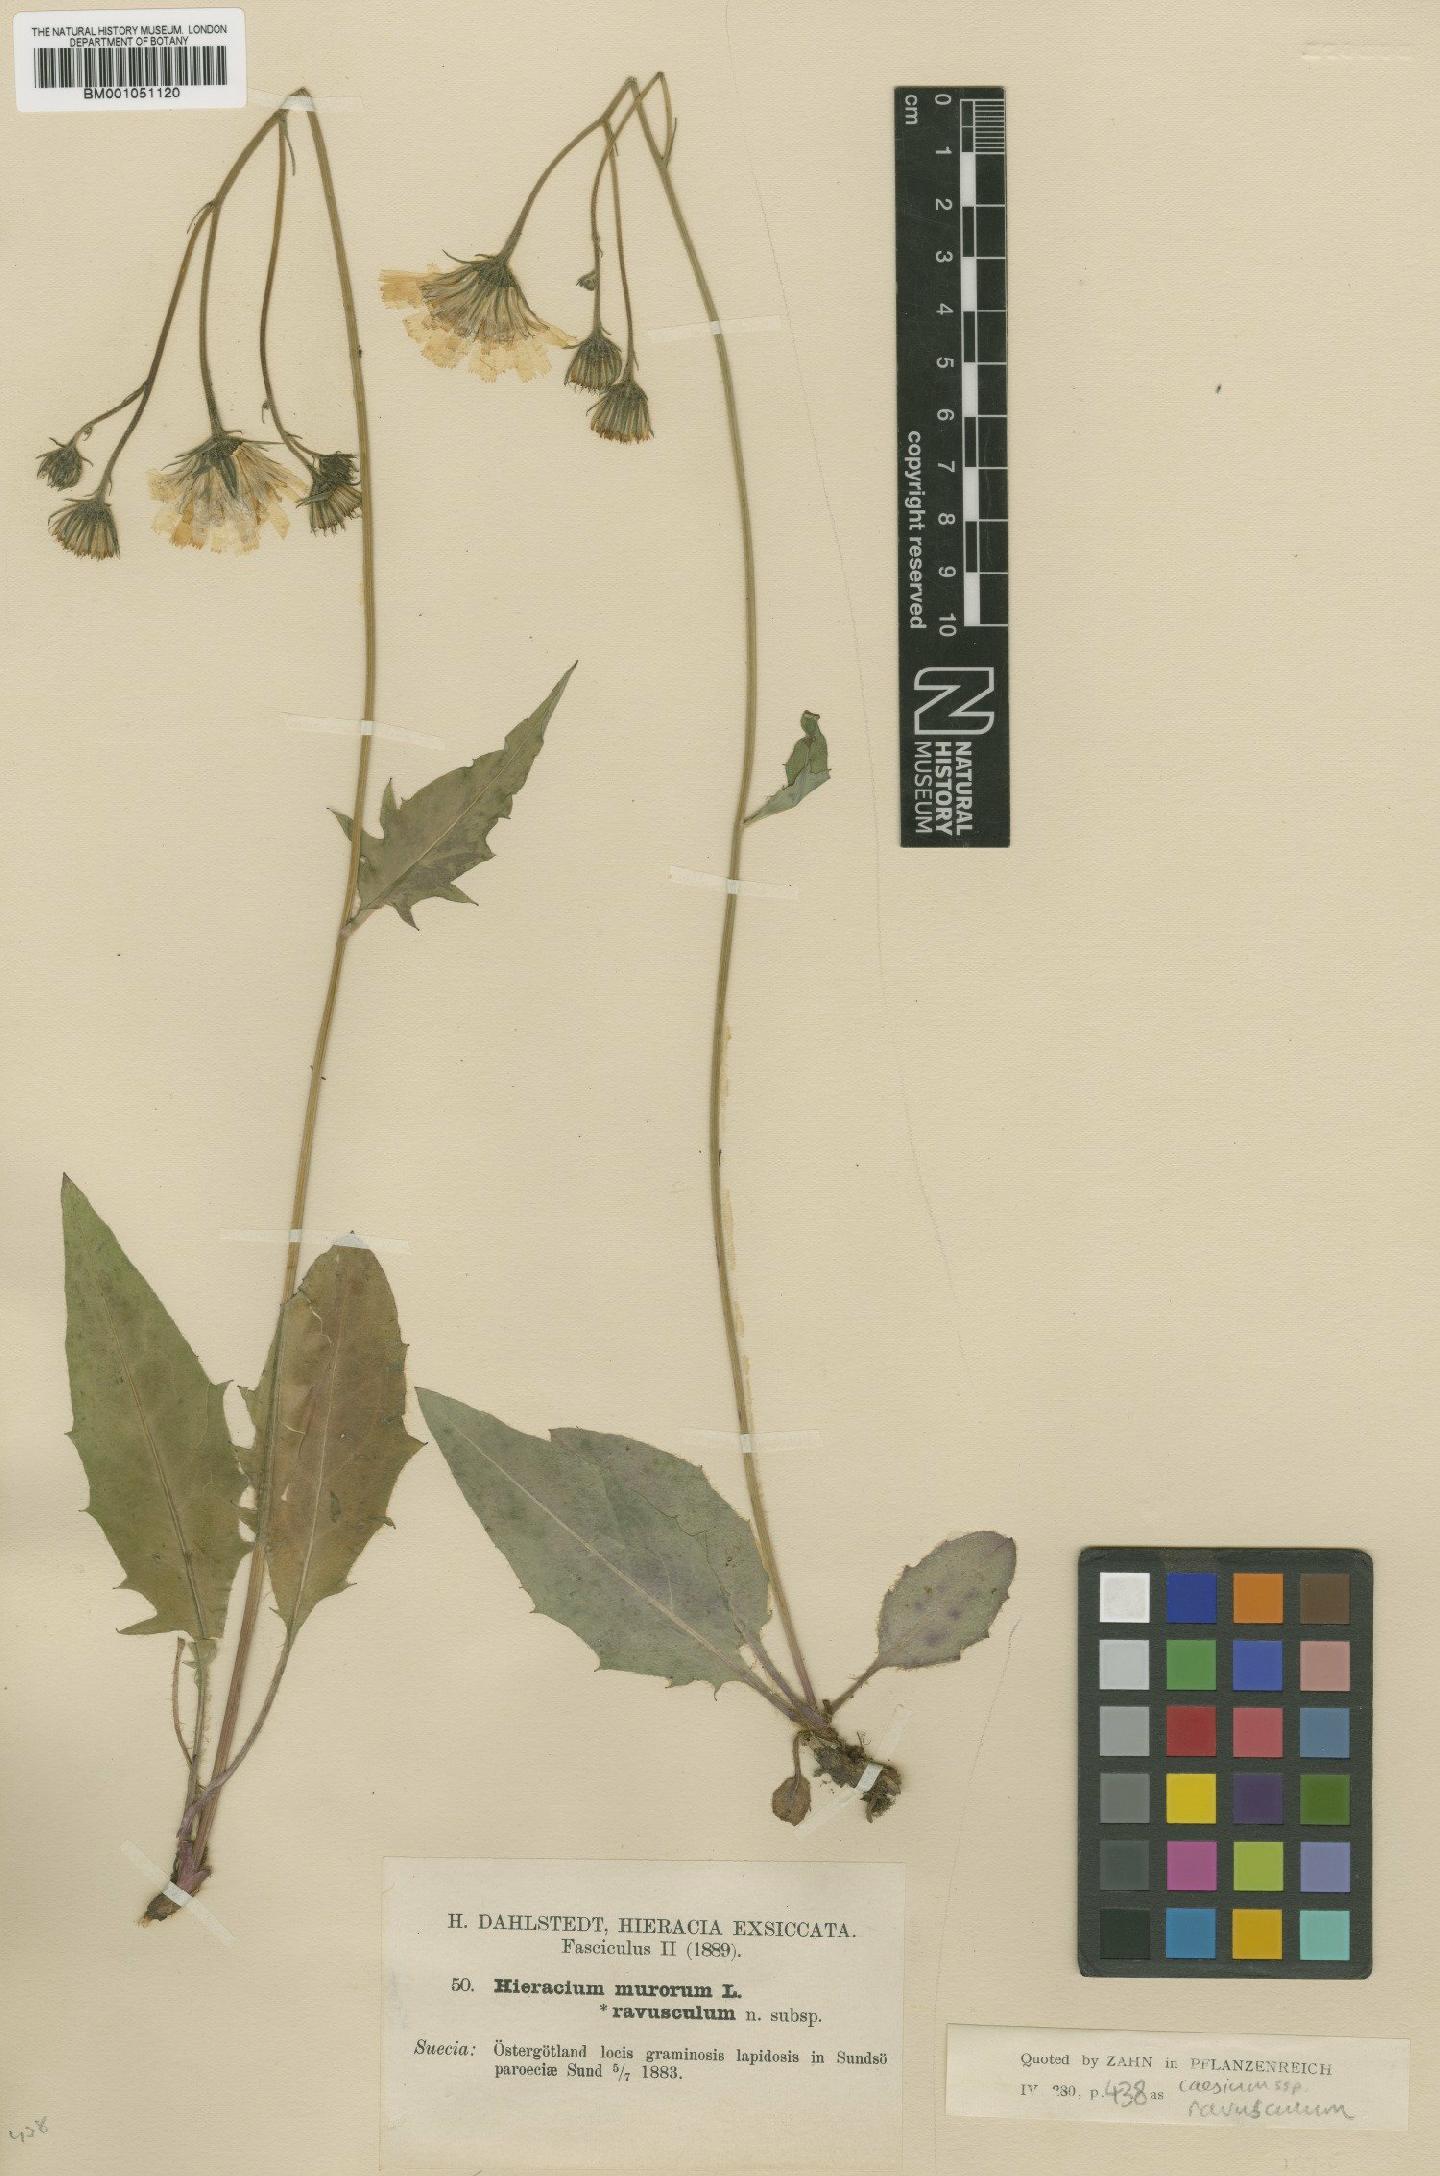 To NHMUK collection (Hieracium caesium subsp. ravusculum (Dahlst.) Zahn; TYPE; NHMUK:ecatalogue:2421473)